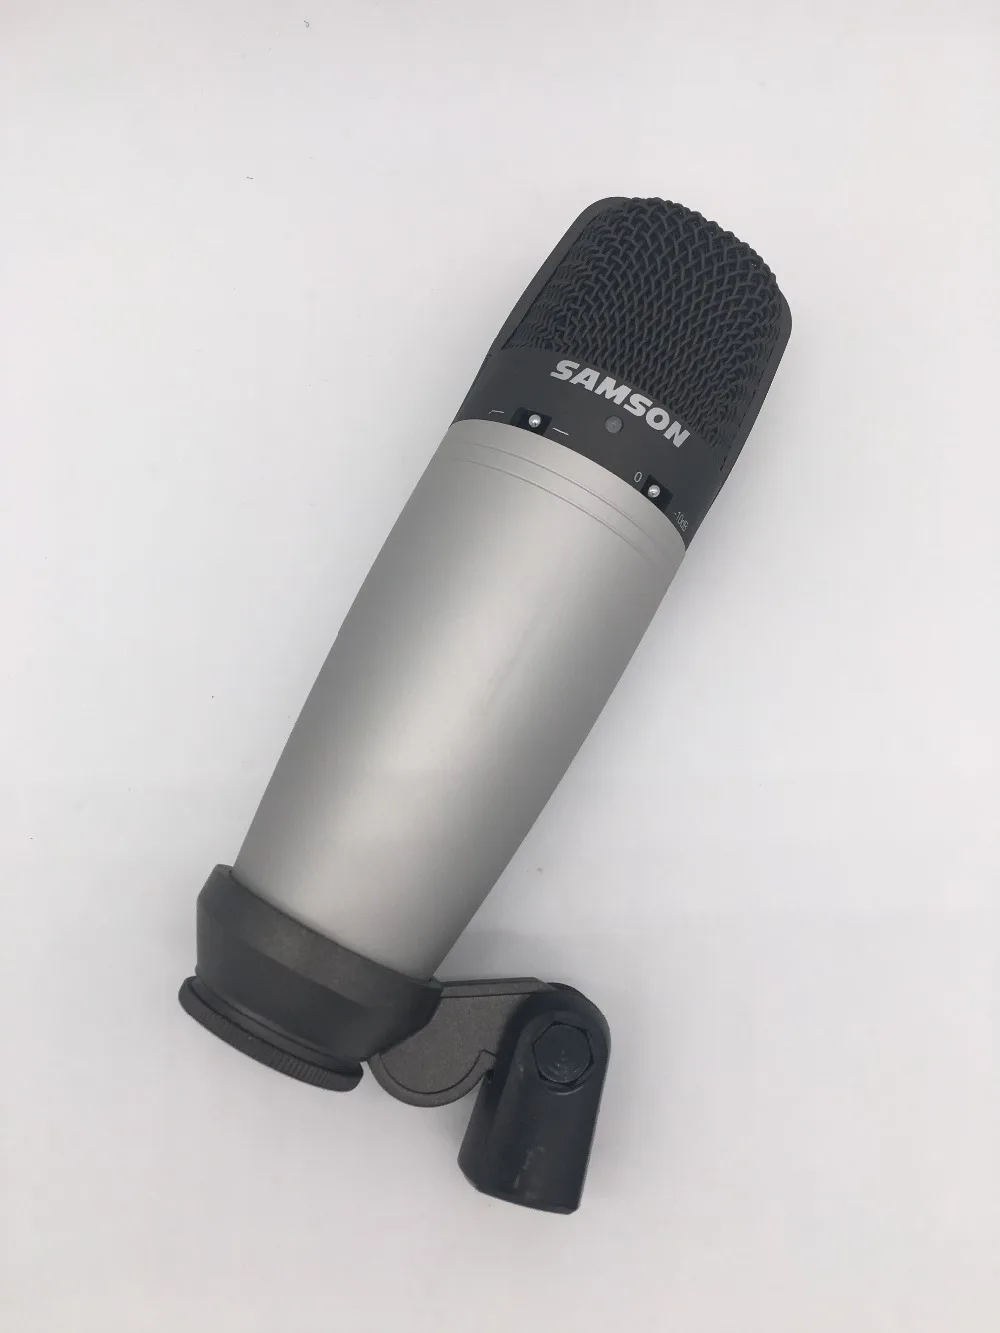 SAMSON C03 с большой диафрагмой мульти-шаблон Студийный конденсаторный микрофон с поворотной подставкой крепление для записи звука